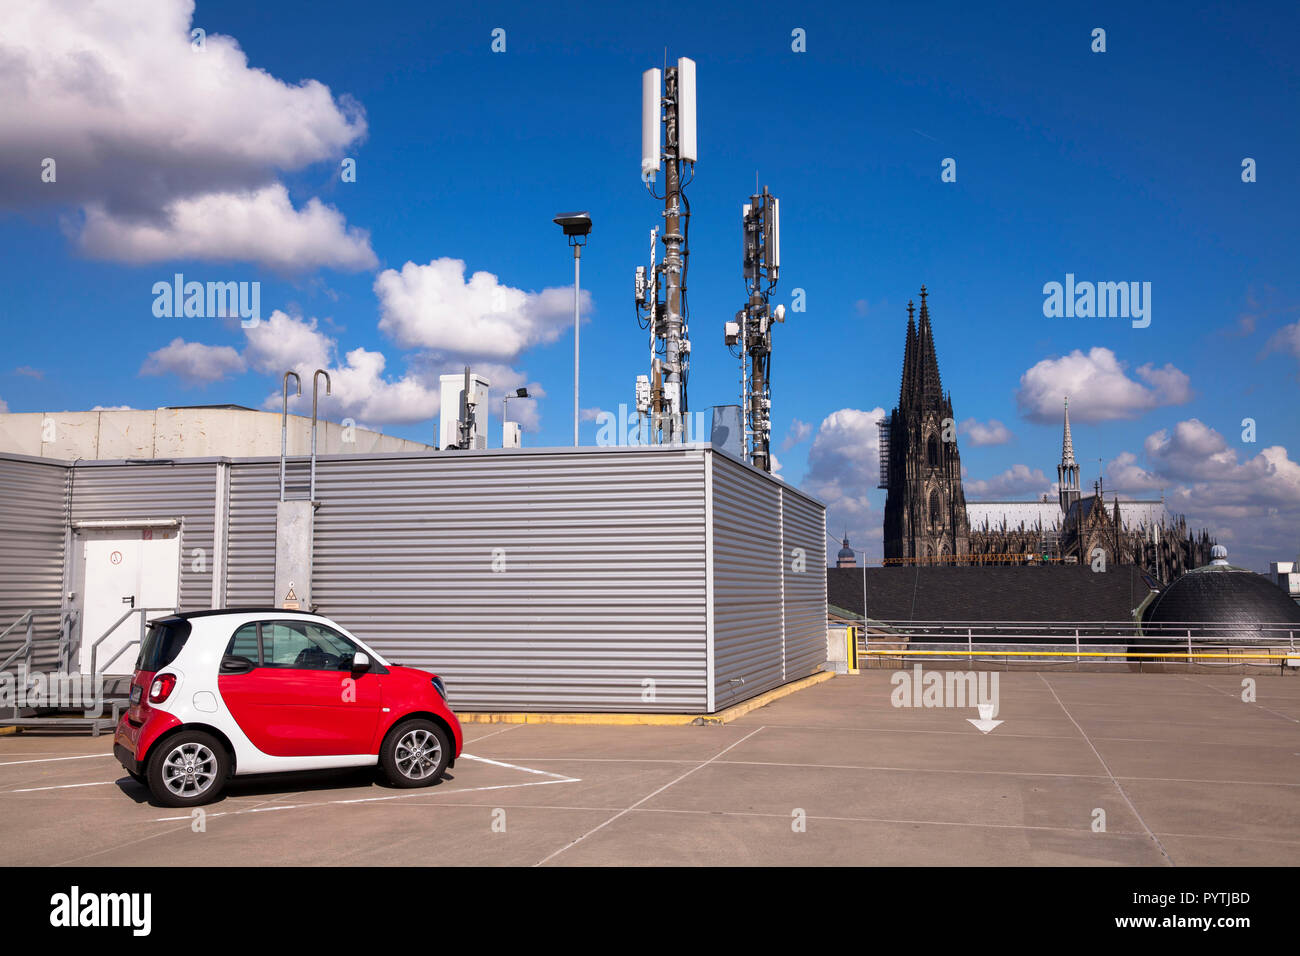 Mástiles de teléfono celular en el estacionamiento de varios pisos del Kaufhof department store, el nivel superior del garaje, inteligente, vistas a la catedral de Colonia, Alemania Foto de stock